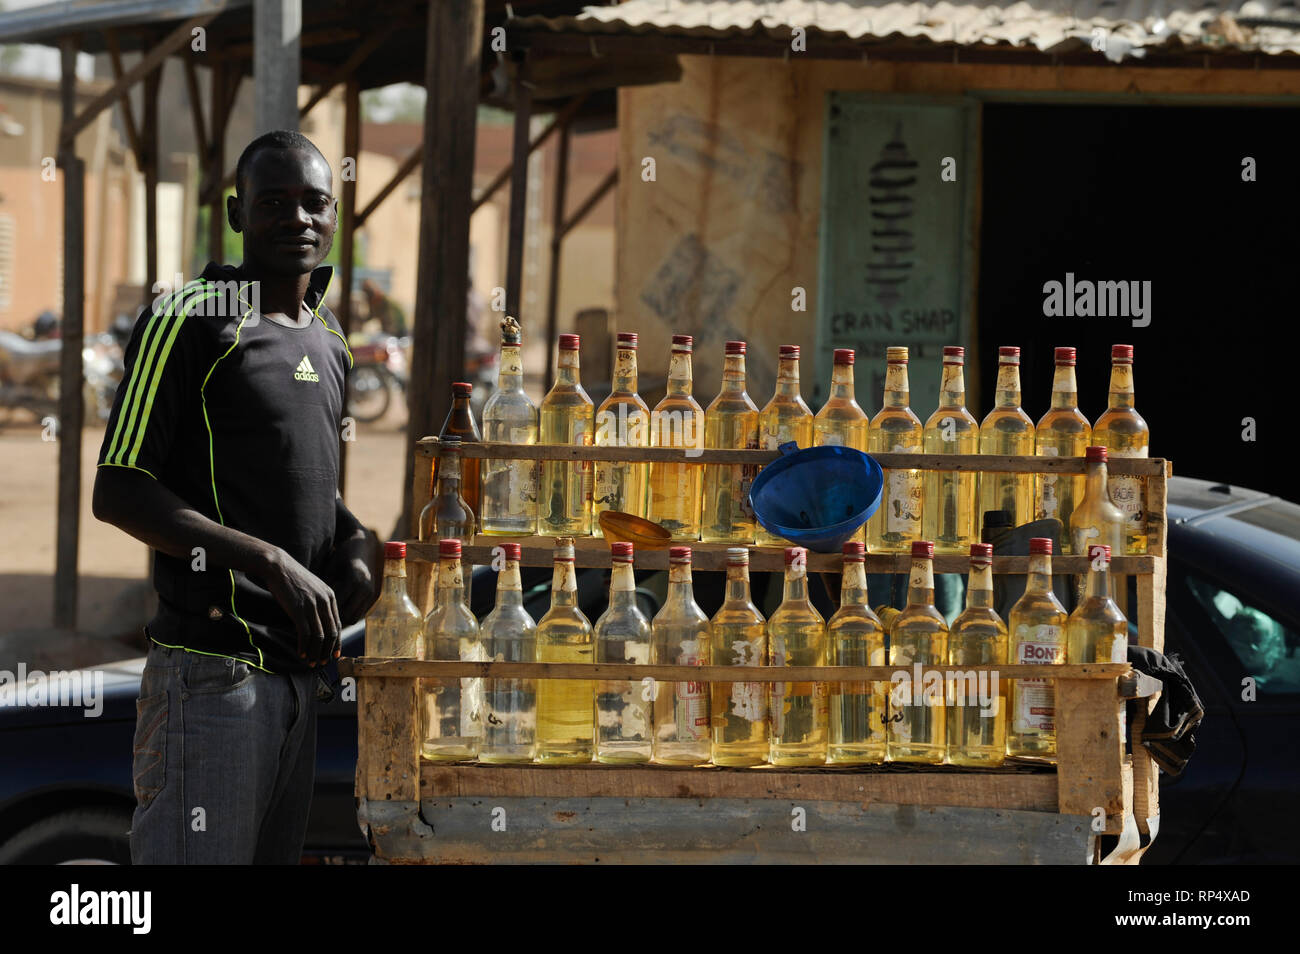 NIGER Zinder, selling of smuggled petrol from Nigeria in gin glass bottles / NIGER Zinder, Verkauf von geschmuggeltem Benzin in Gin Flaschen, der Niger ist seit 2012 Oelproduzent und betreibt mit chinesischer Firma CNPC die neue Raffinerie SORAZ bei Zinder Stock Photo